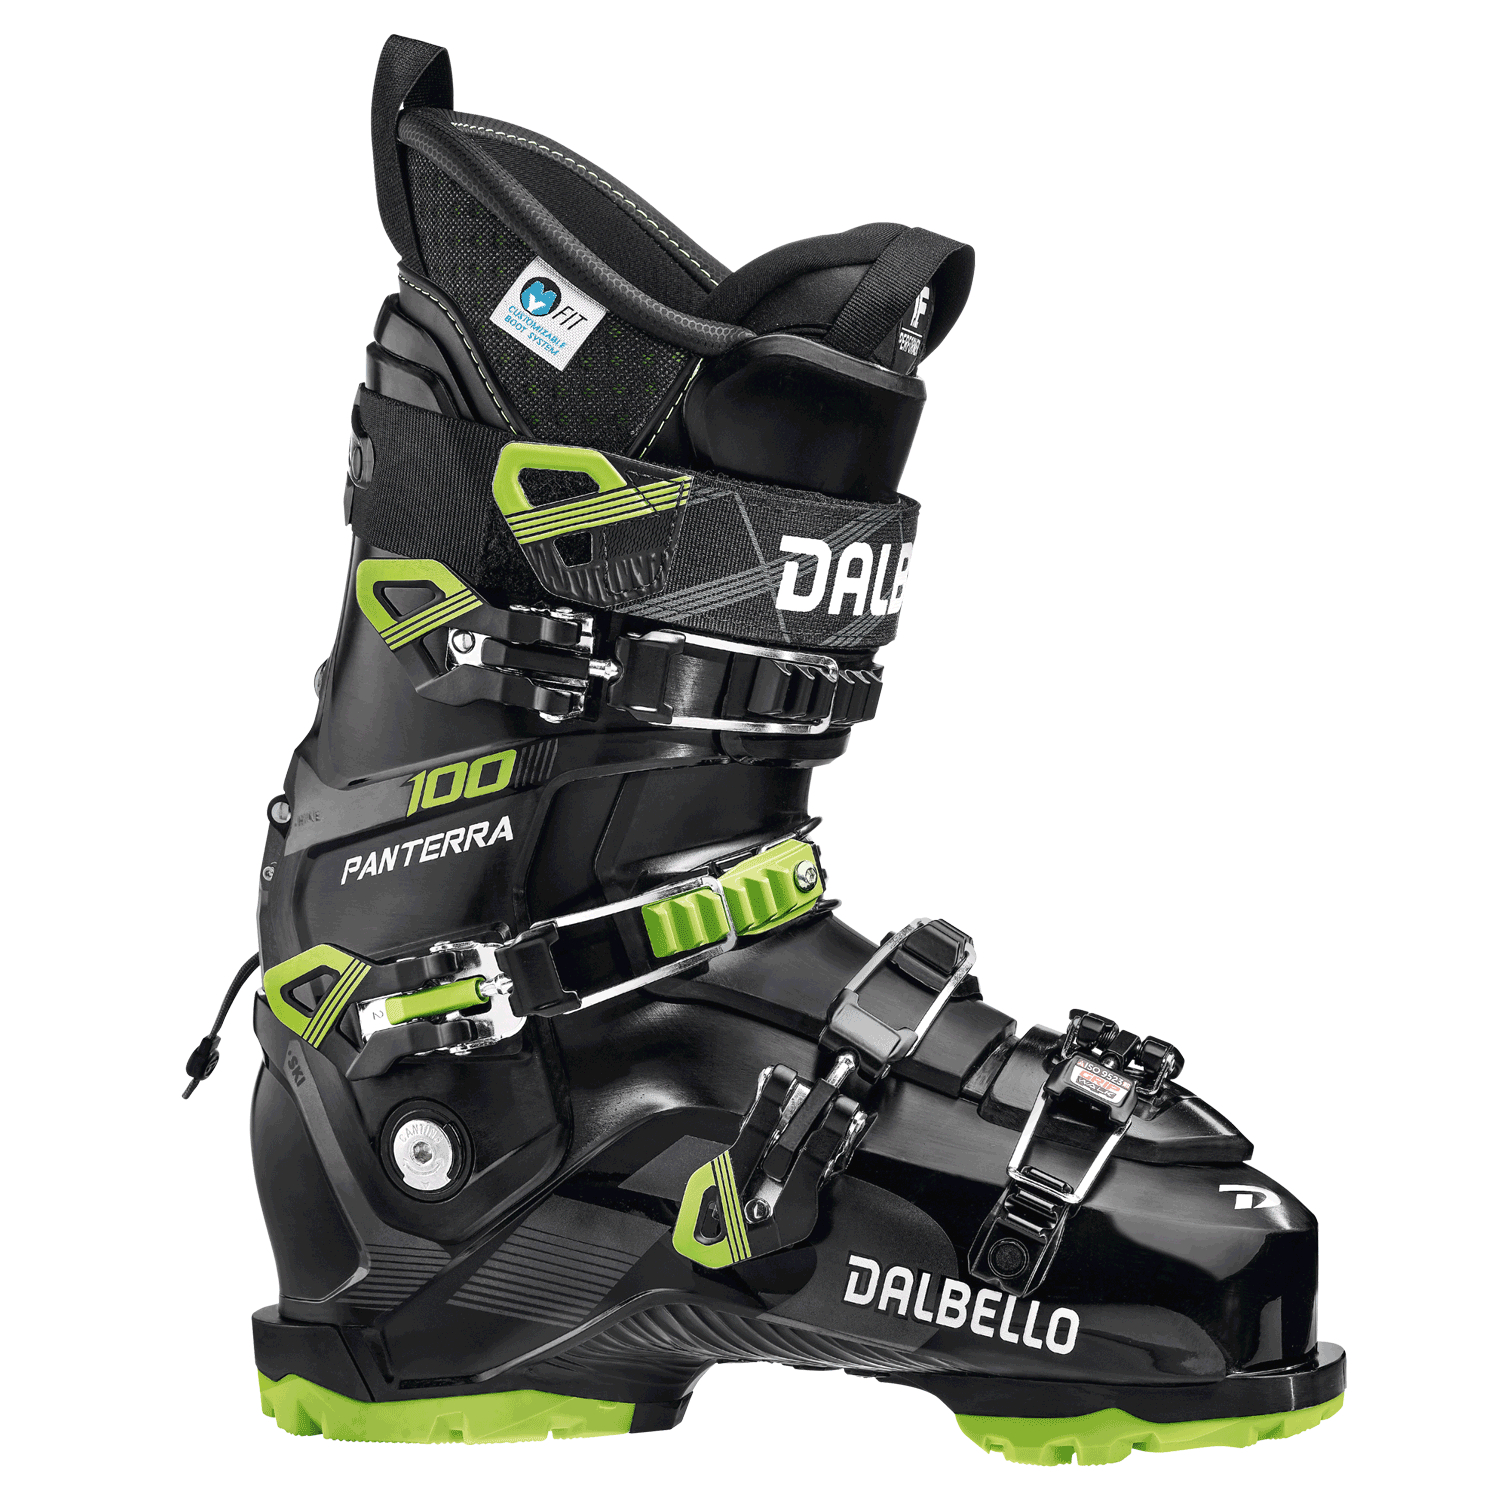 Универсальные лыжные ботинки Dalbello Panterra 100 GW Black/Lime (285)